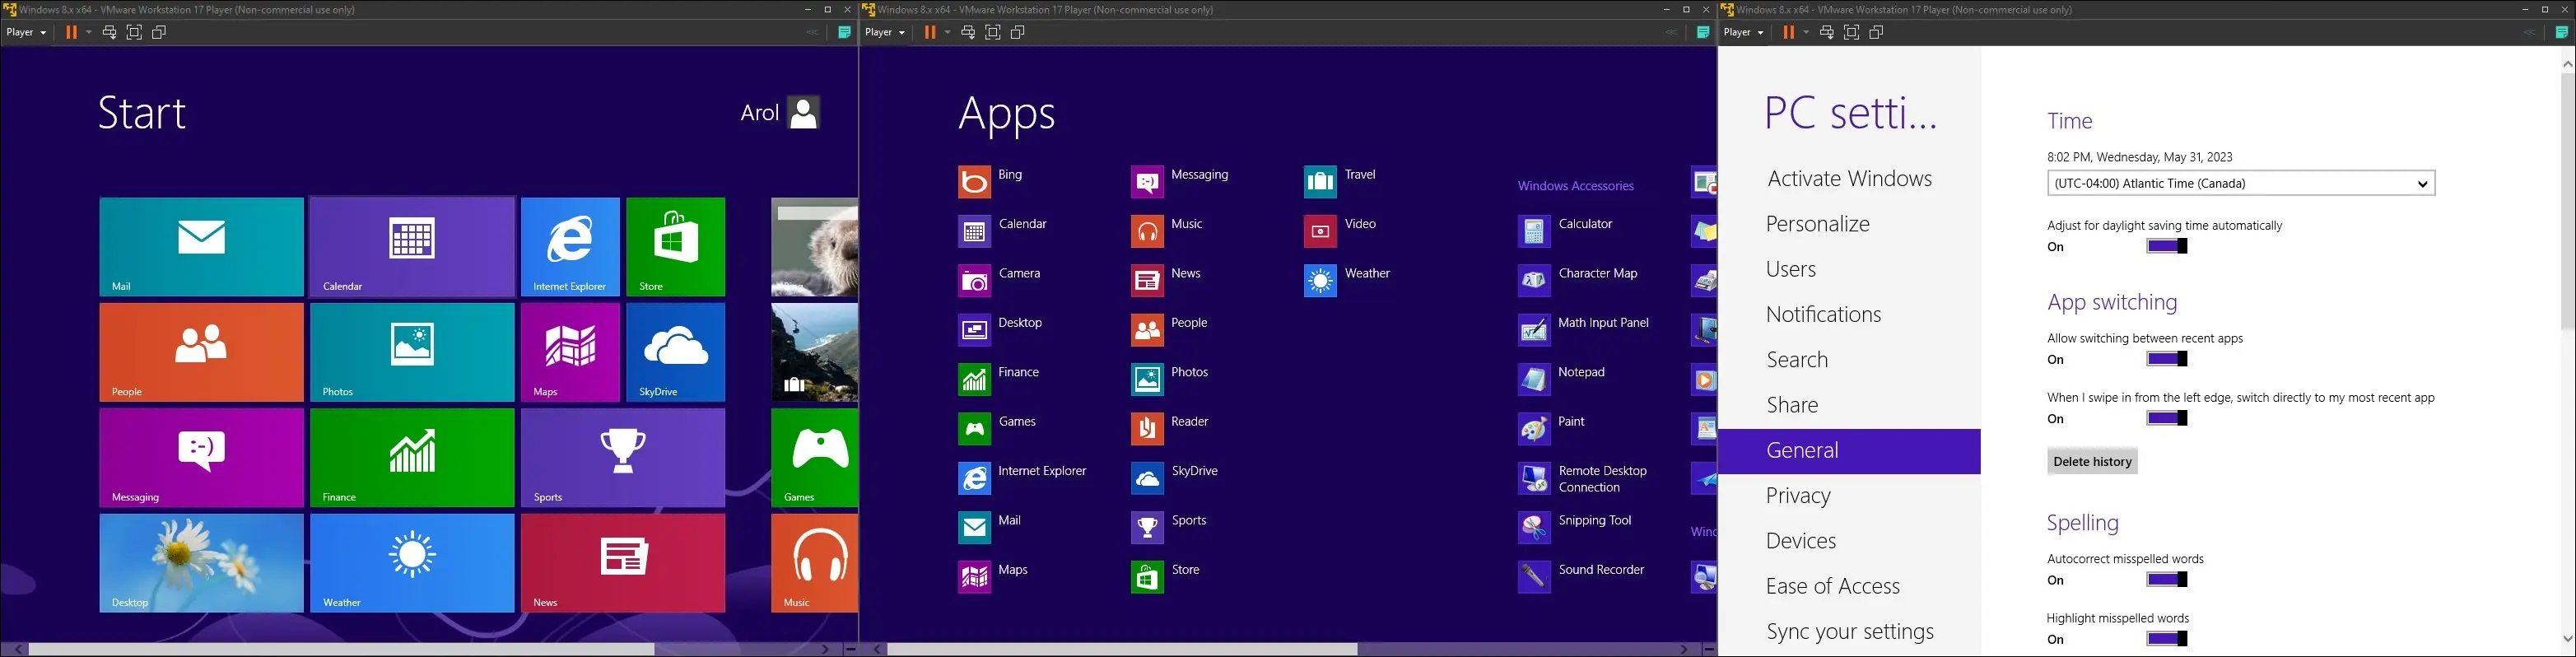 images de Windows 8 sur une machine virtuelle, montrant le menu de démarrage, le menu de toutes les applications et l'application des paramètres